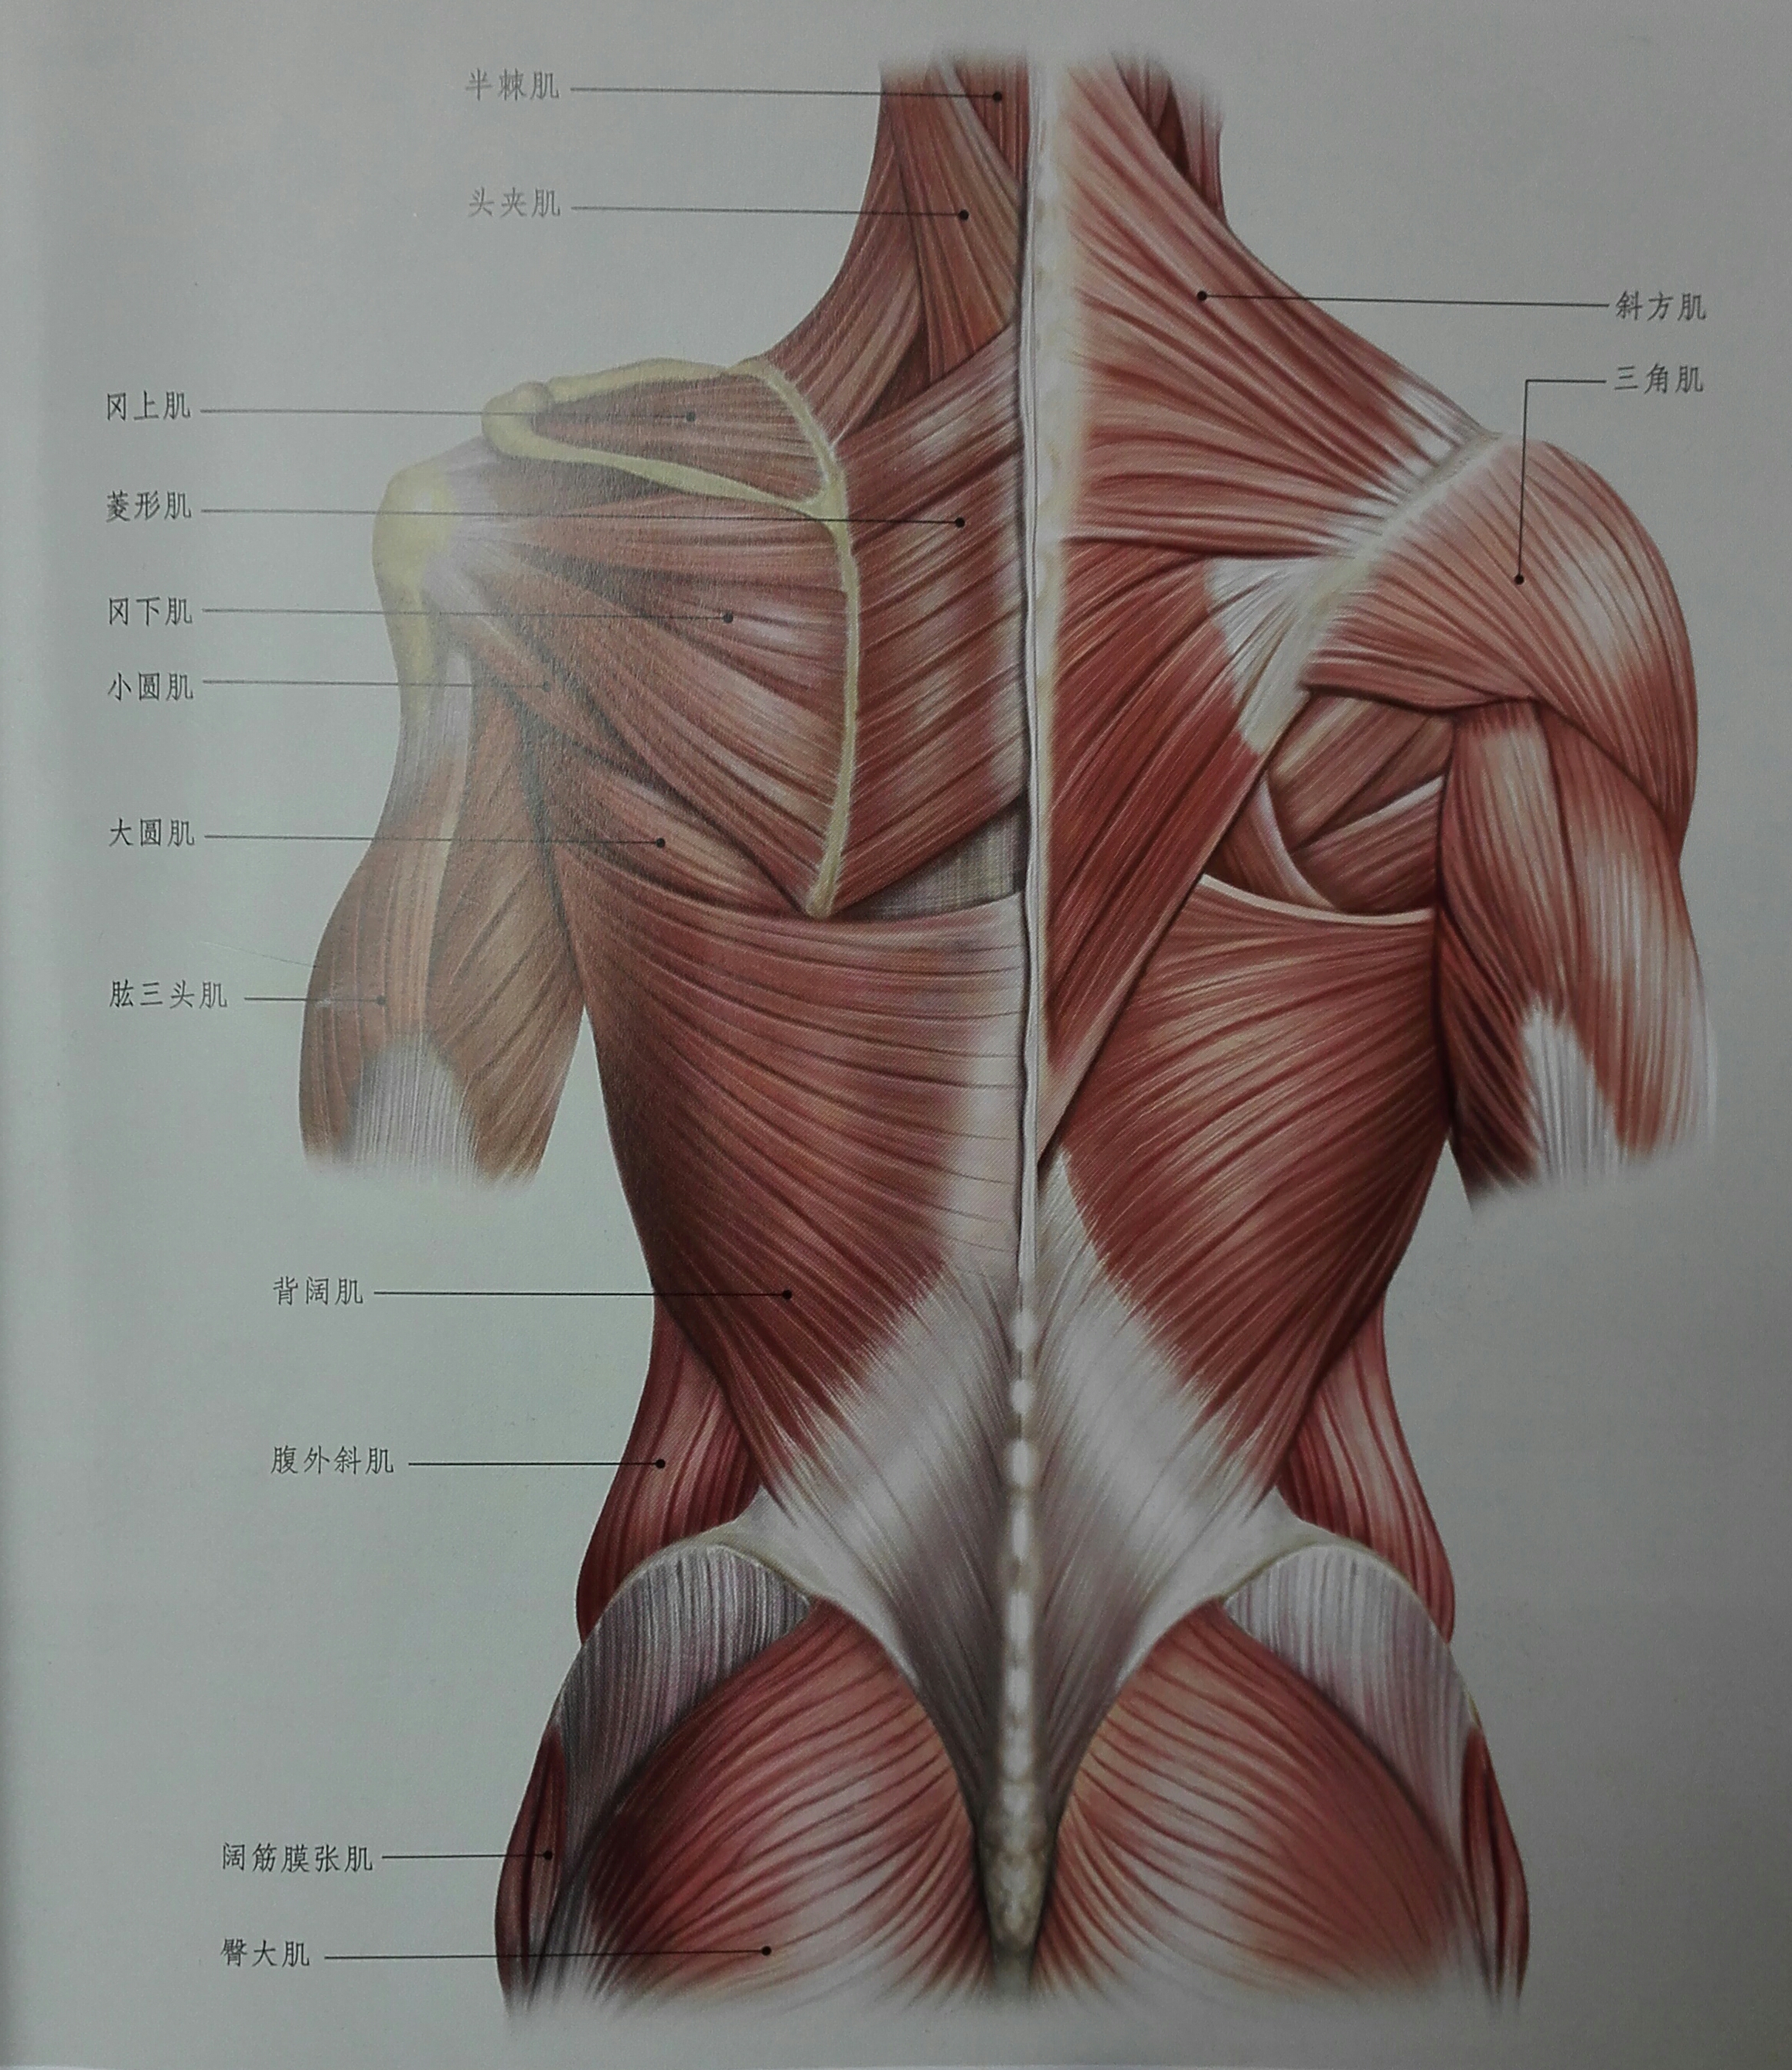 背部肌肉图解大全图片